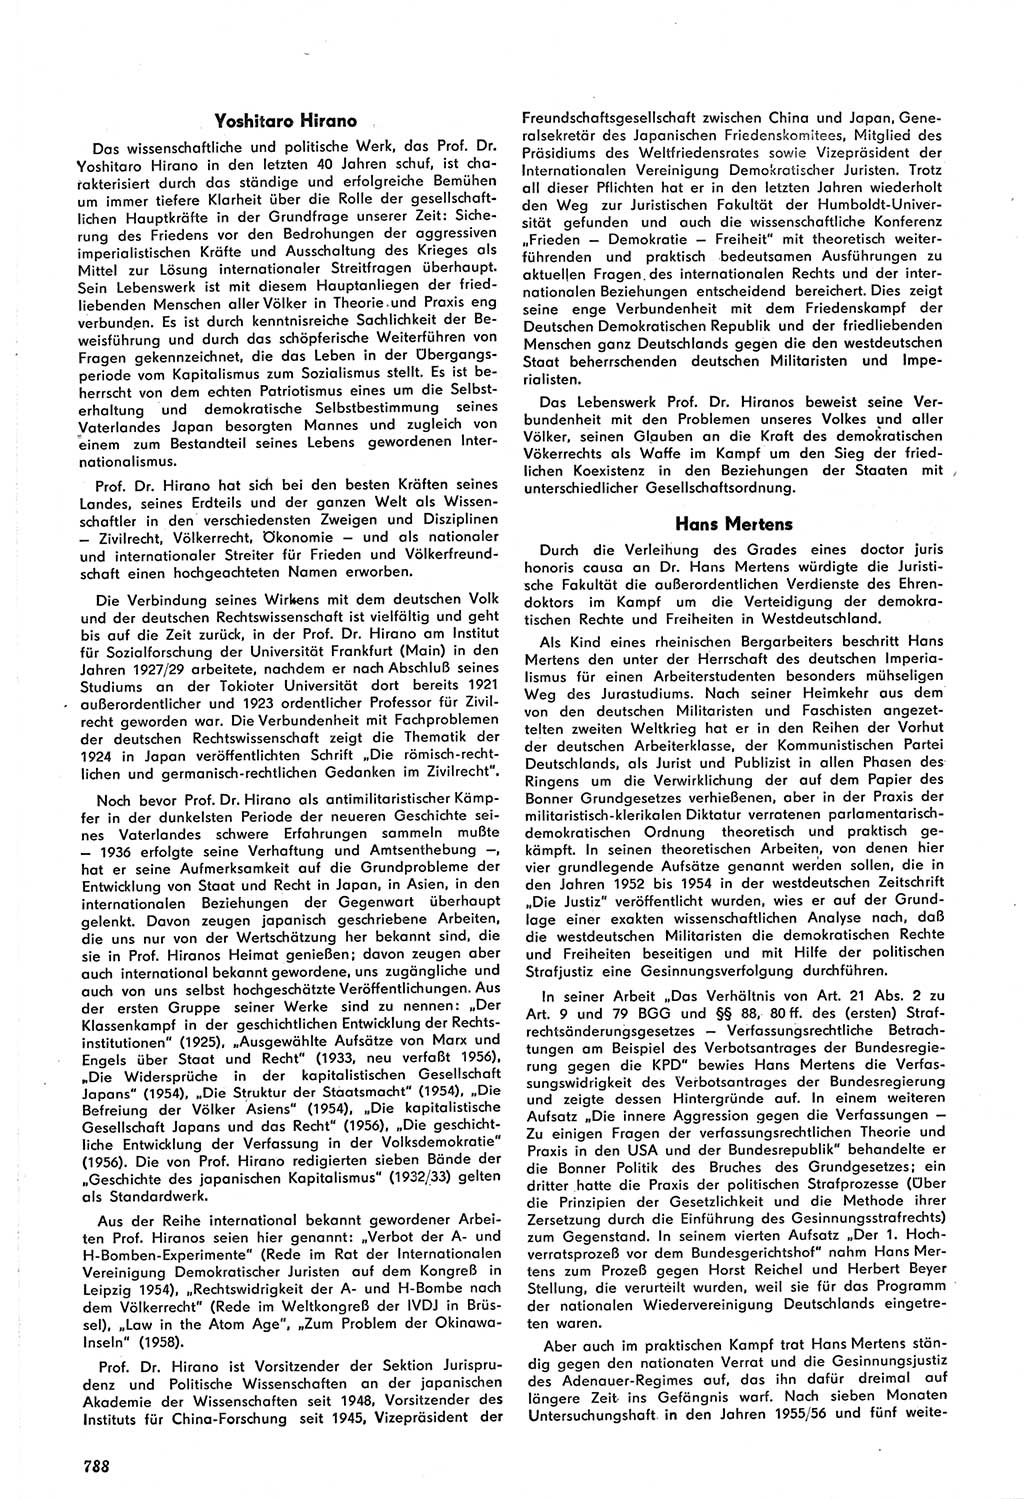 Neue Justiz (NJ), Zeitschrift für Recht und Rechtswissenschaft [Deutsche Demokratische Republik (DDR)], 14. Jahrgang 1960, Seite 788 (NJ DDR 1960, S. 788)